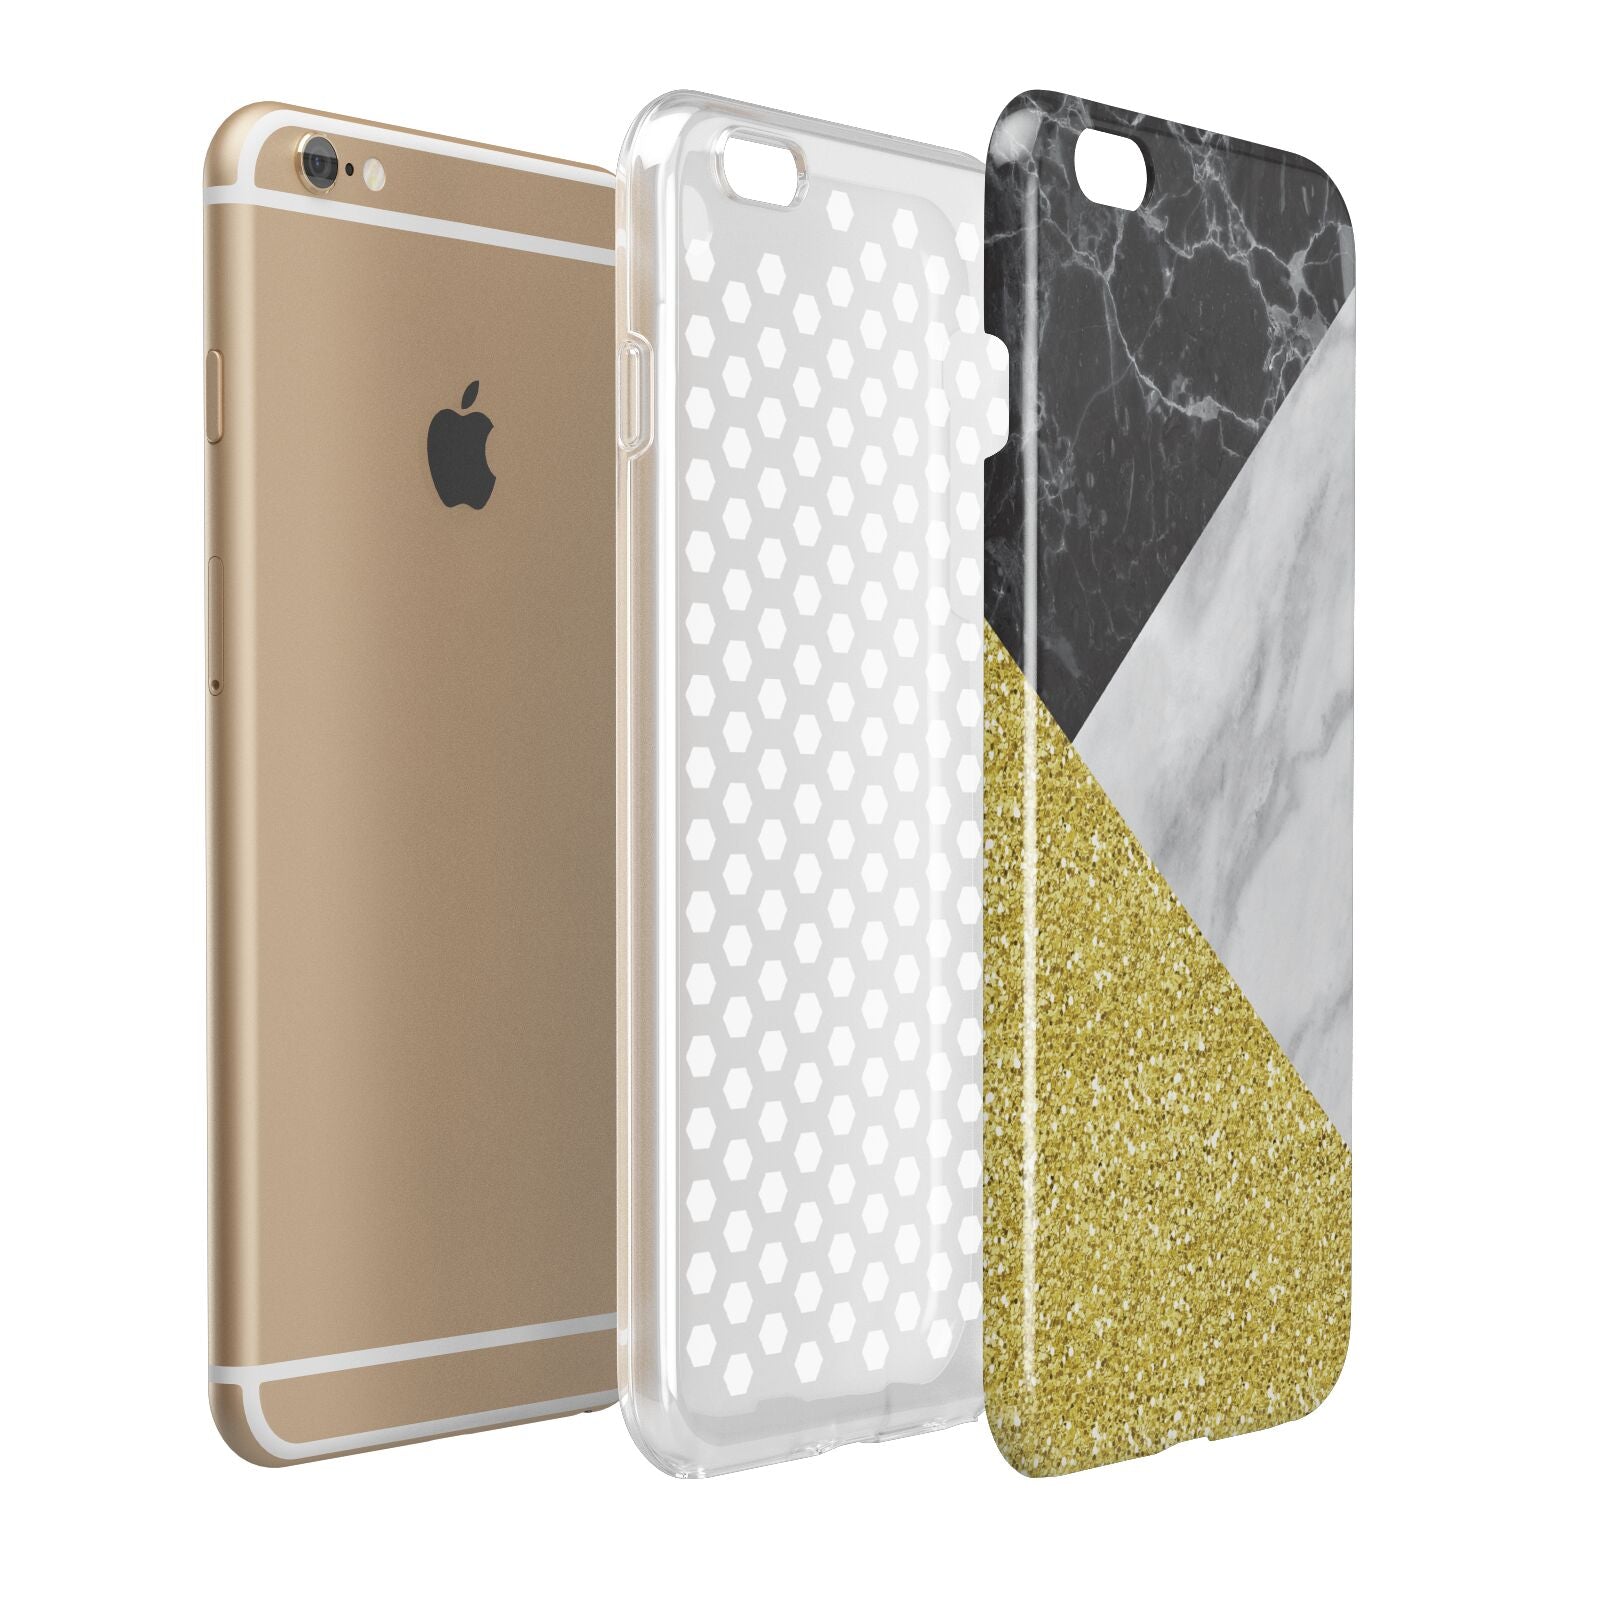 Marble Black Gold Apple iPhone 6 Plus 3D Tough Case Expand Detail Image